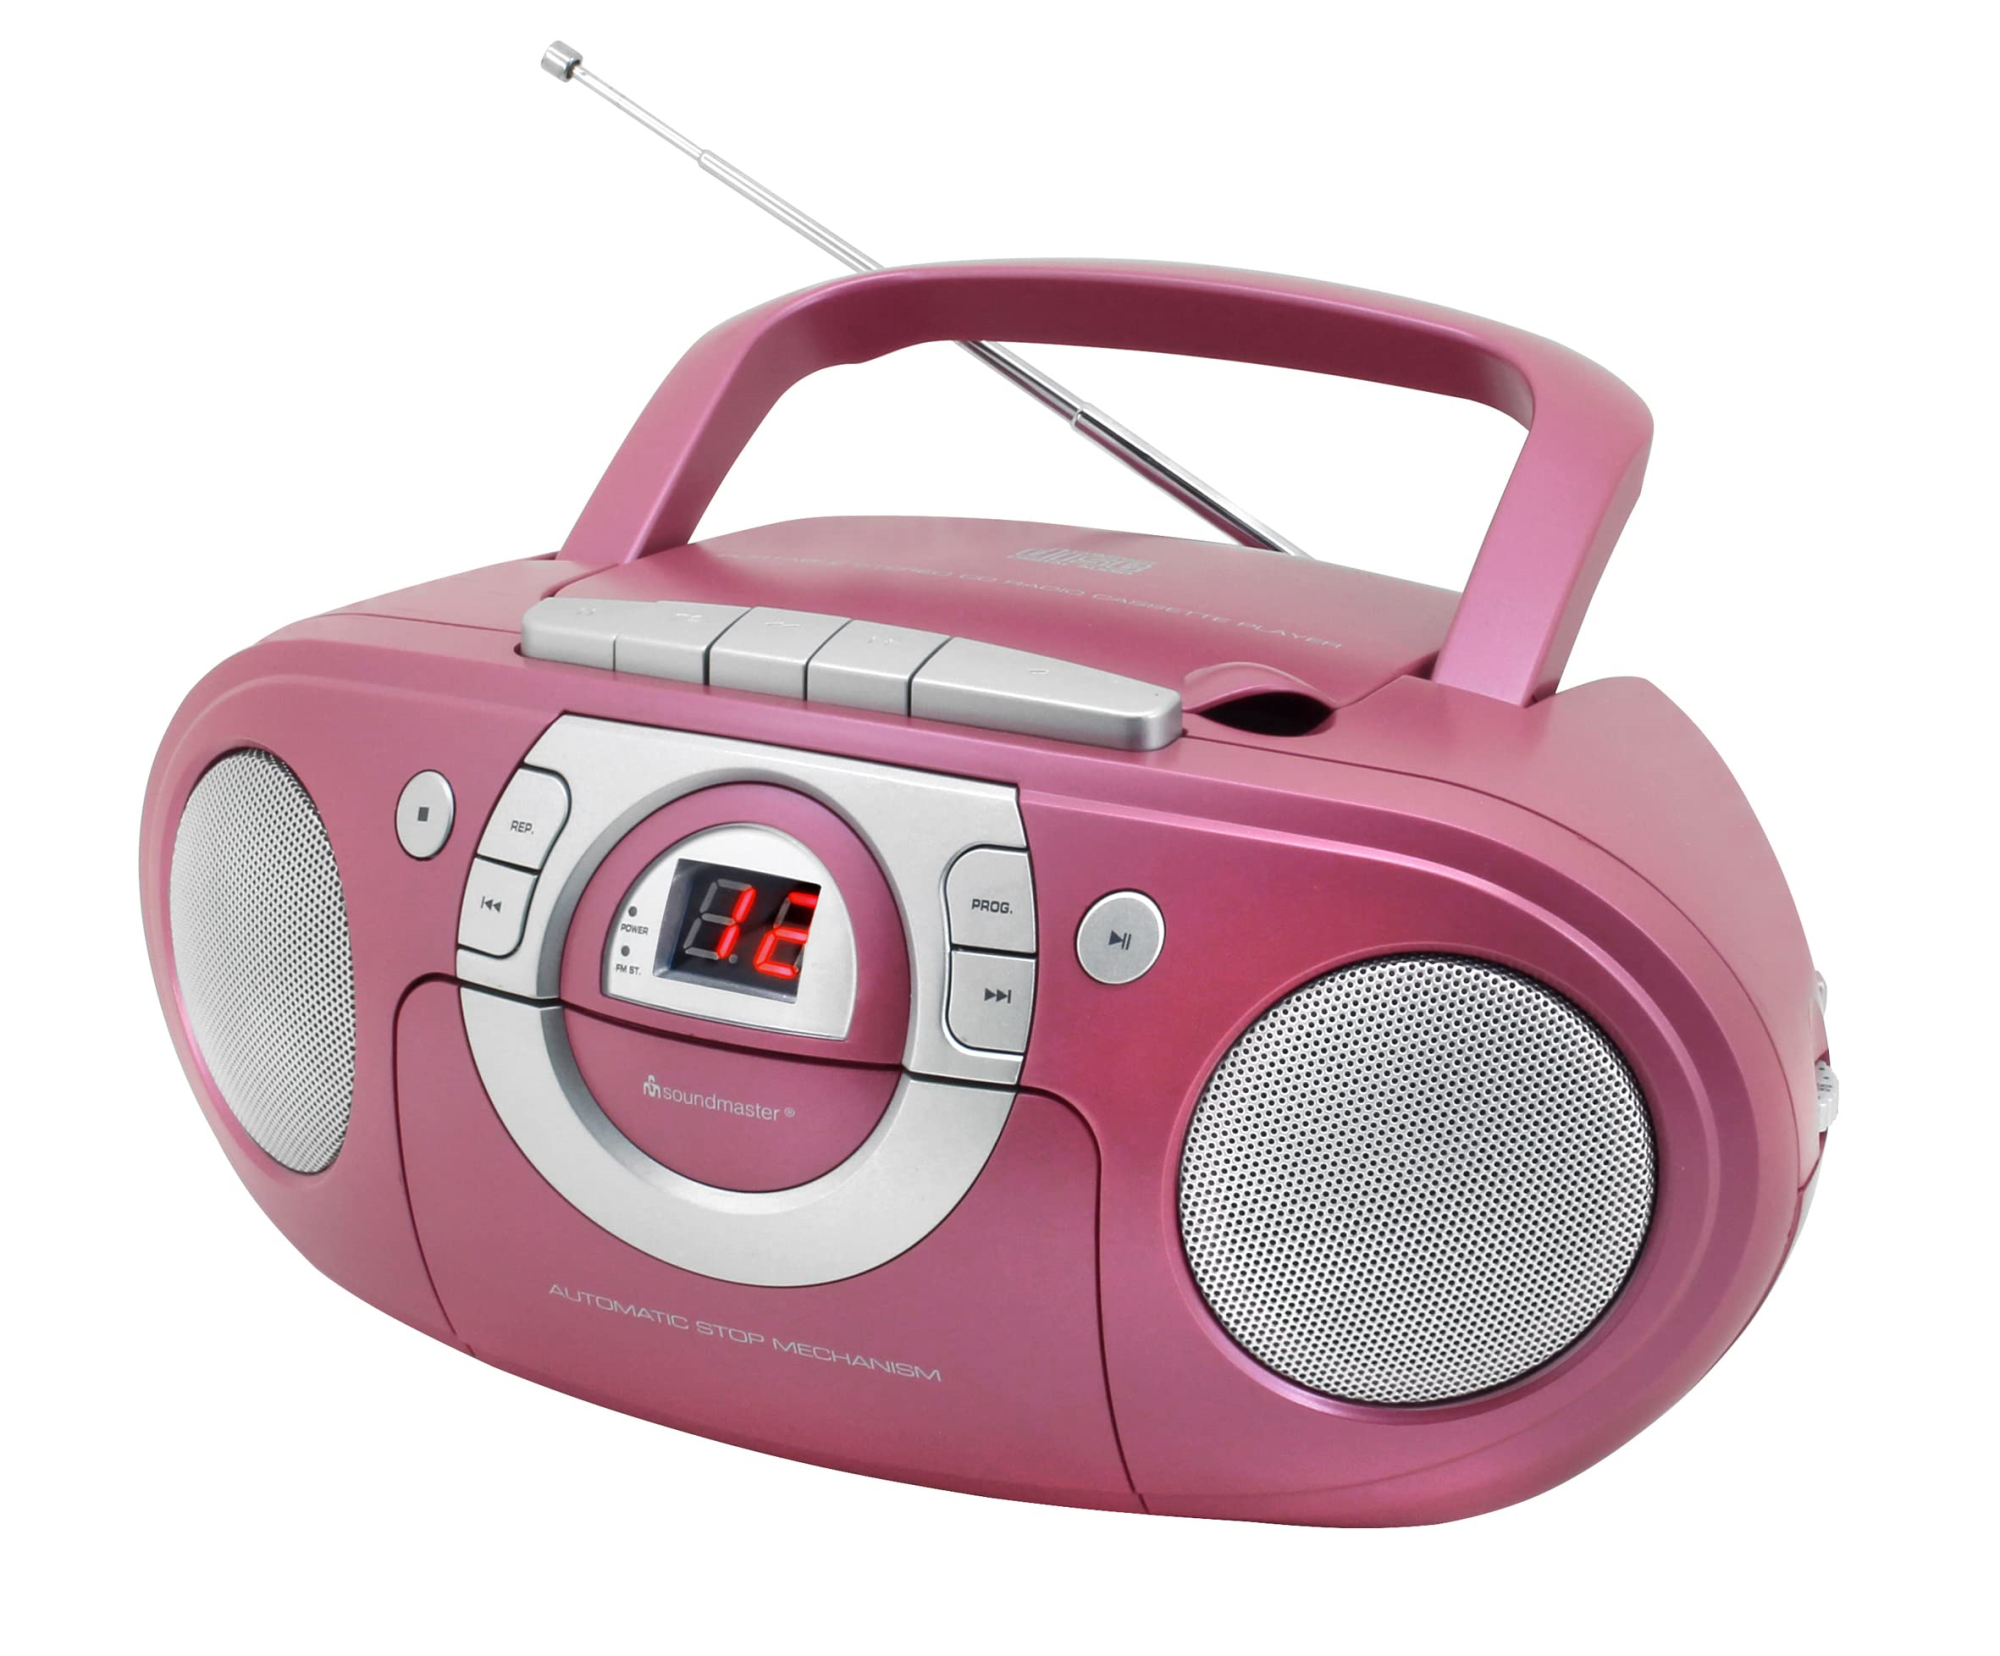 Audio & Hi-Fi Soundmaster: Cd Boombox With Radio And Cassette Player NUOVO SIGILLATO SUBITO DISPONIBILE